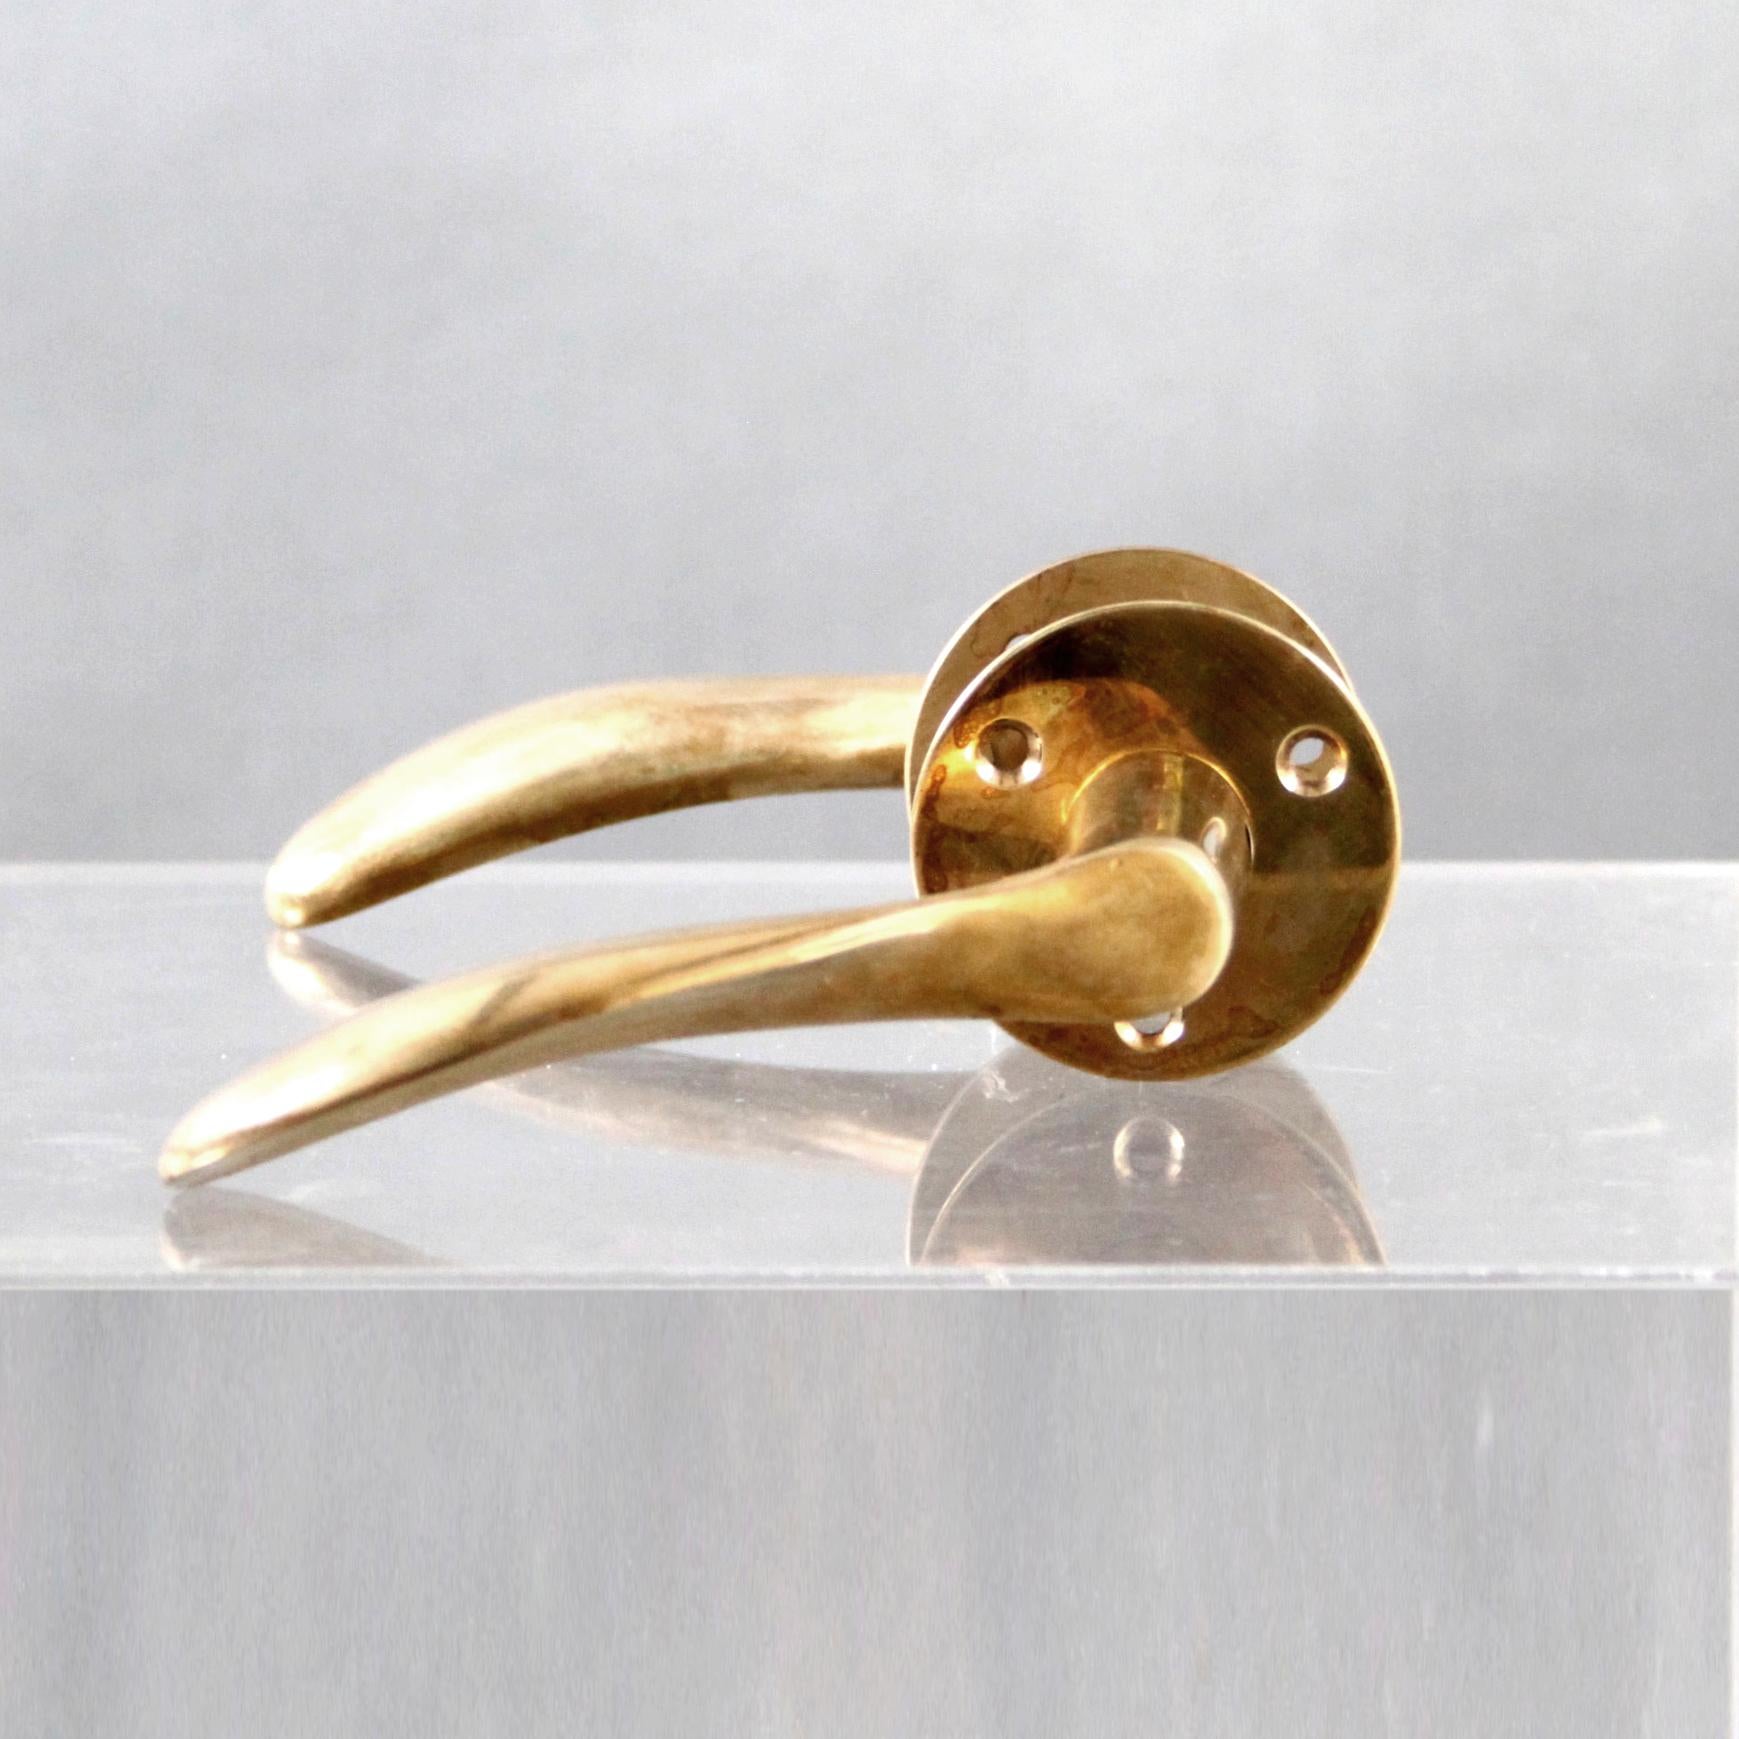 Scandinavian Modern Arne Jacobsen Door Handles in Solid Brass